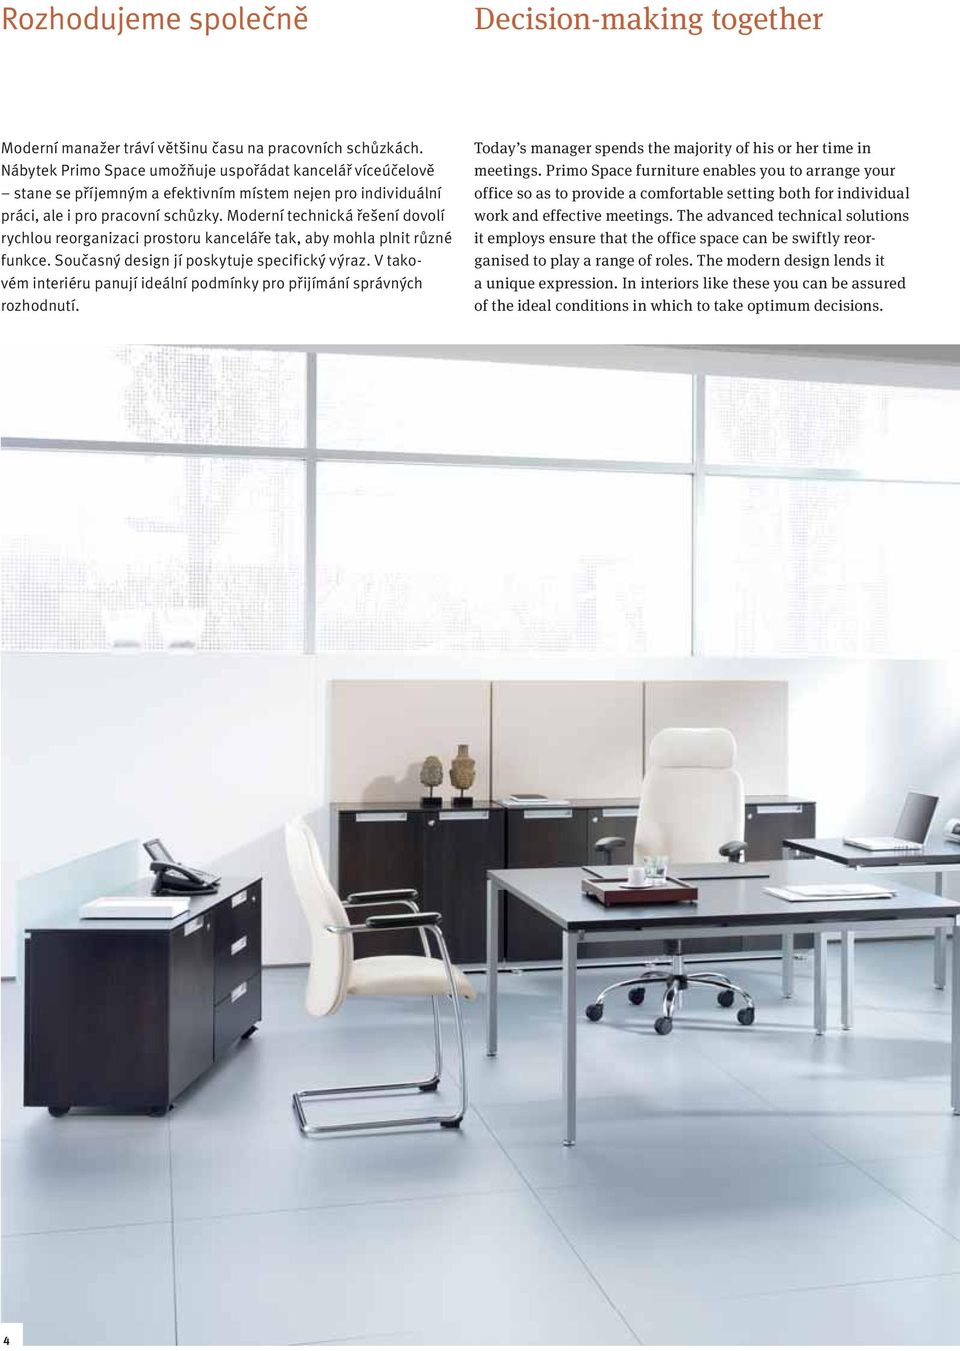 Moderní technická řešení dovolí rychlou reorganizaci prostoru kanceláře tak, aby mohla plnit různé funkce. Současný design jí poskytuje specifický výraz.